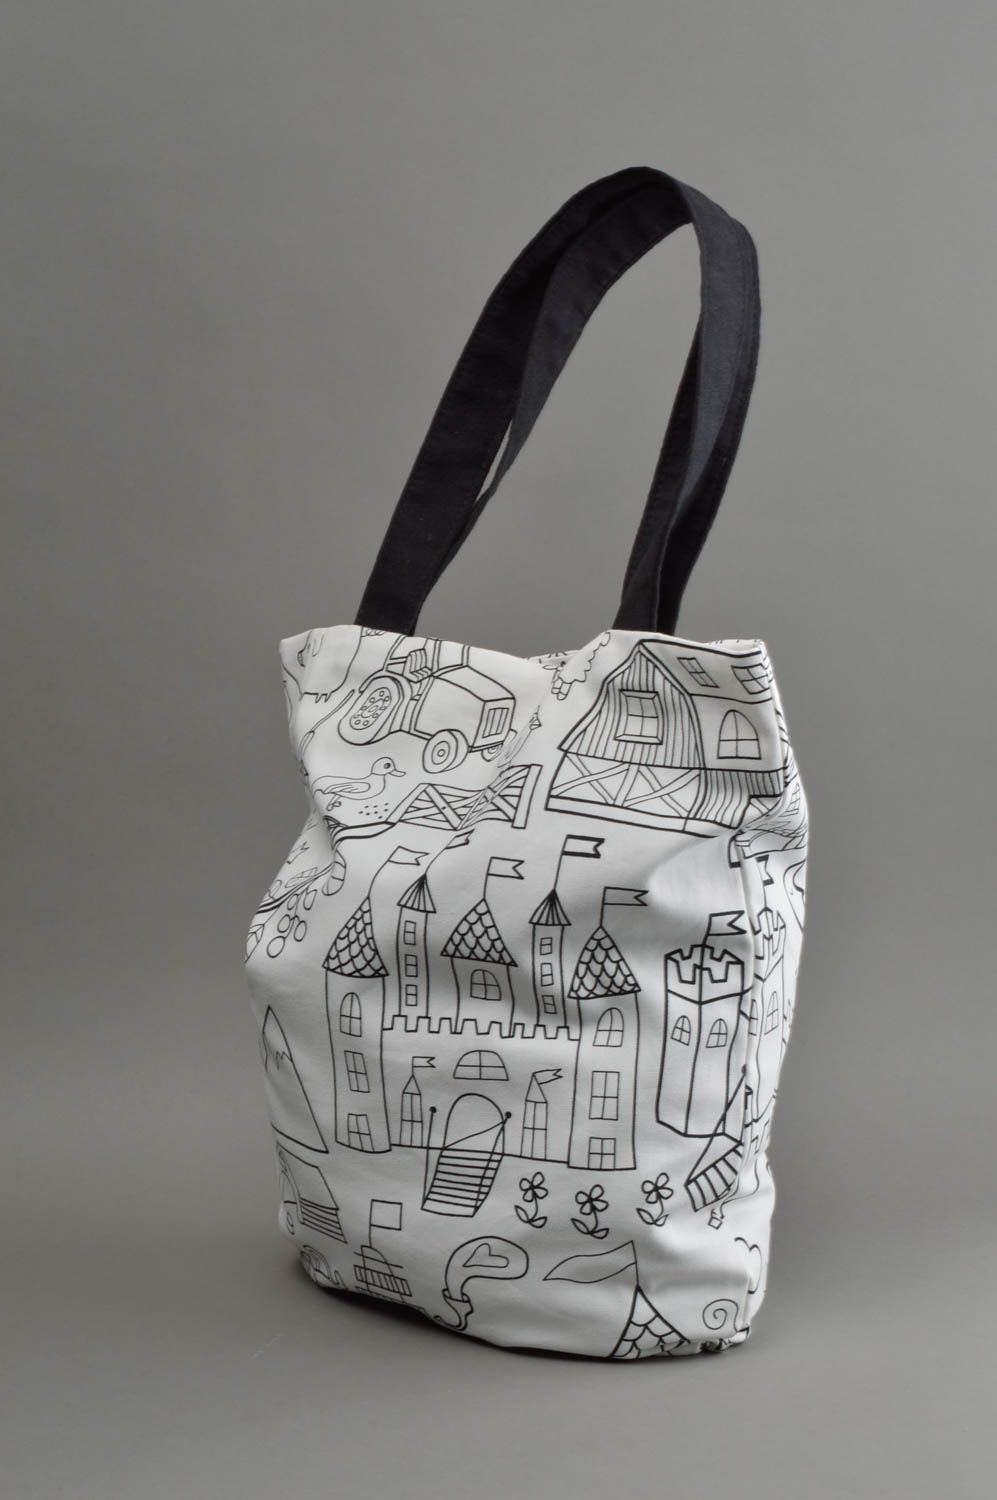 Хлопковая сумка ручной работы с рисунком в виде пейзажа белая большая стильная фото 2